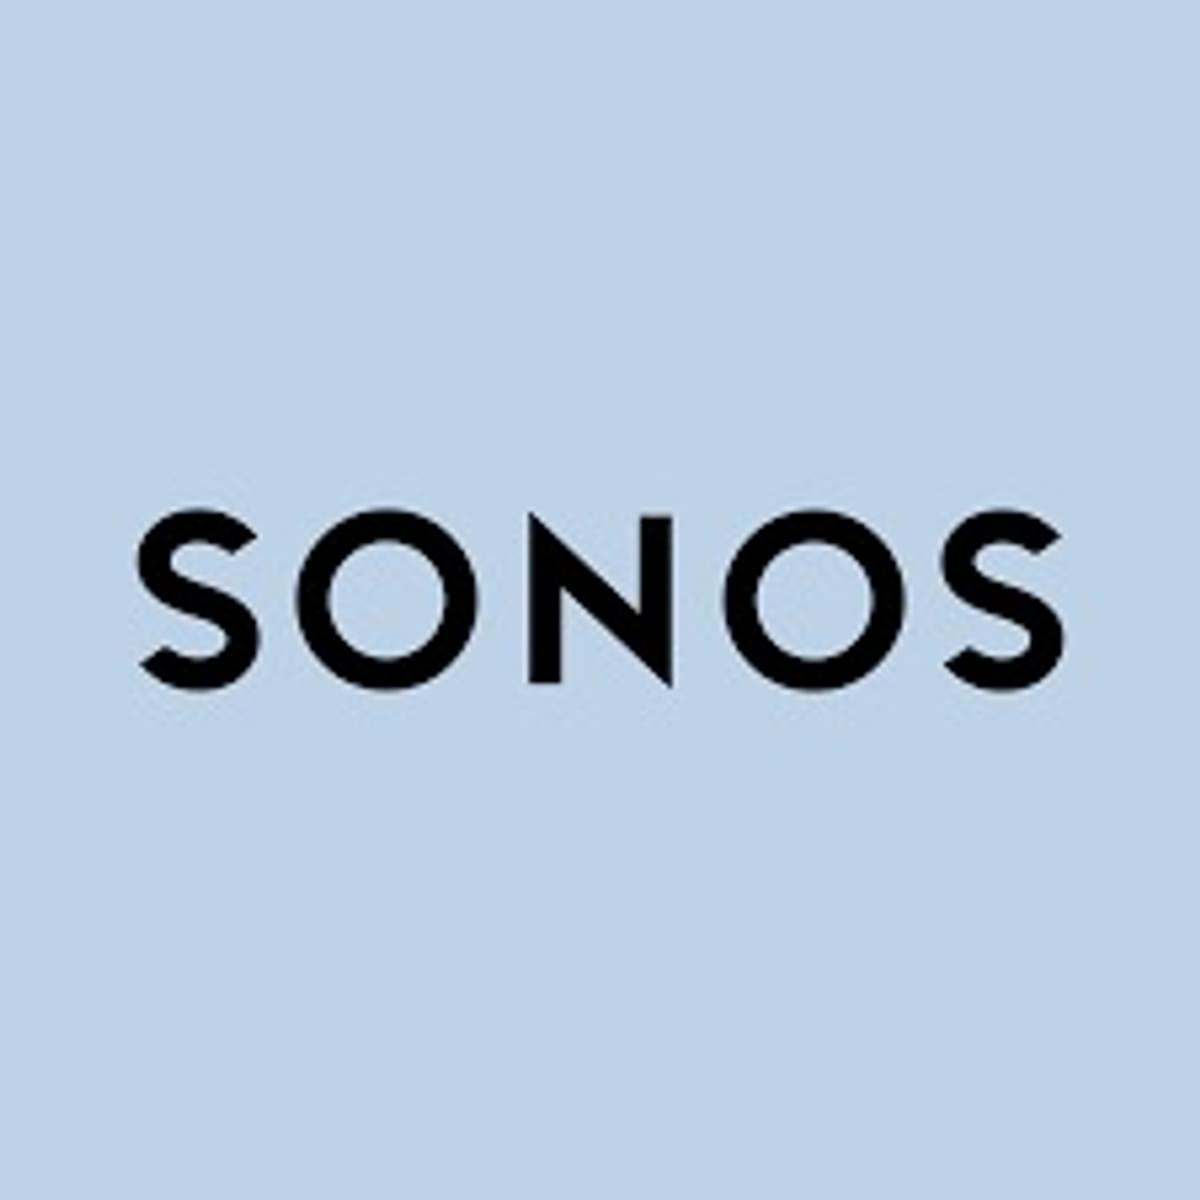 Sonos klaagt Google aan om patenten image